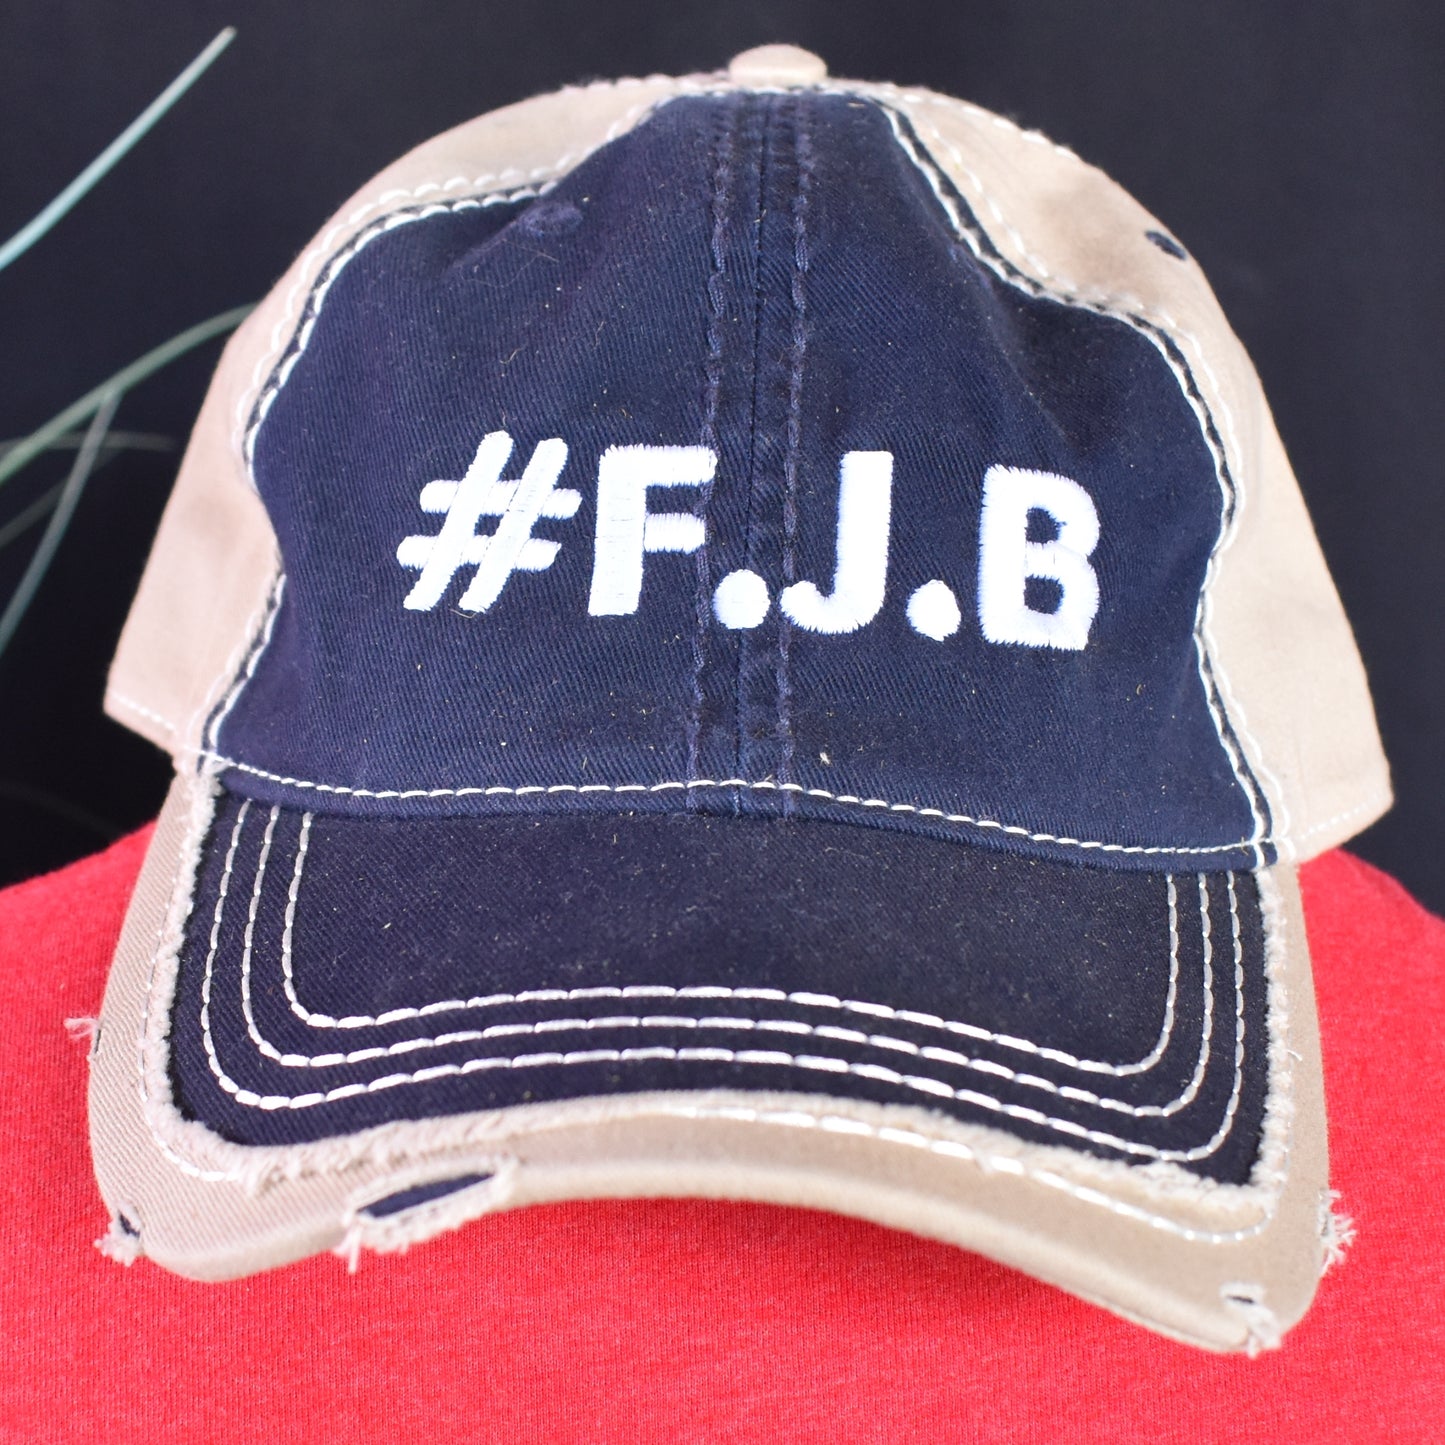 #FJB HATS